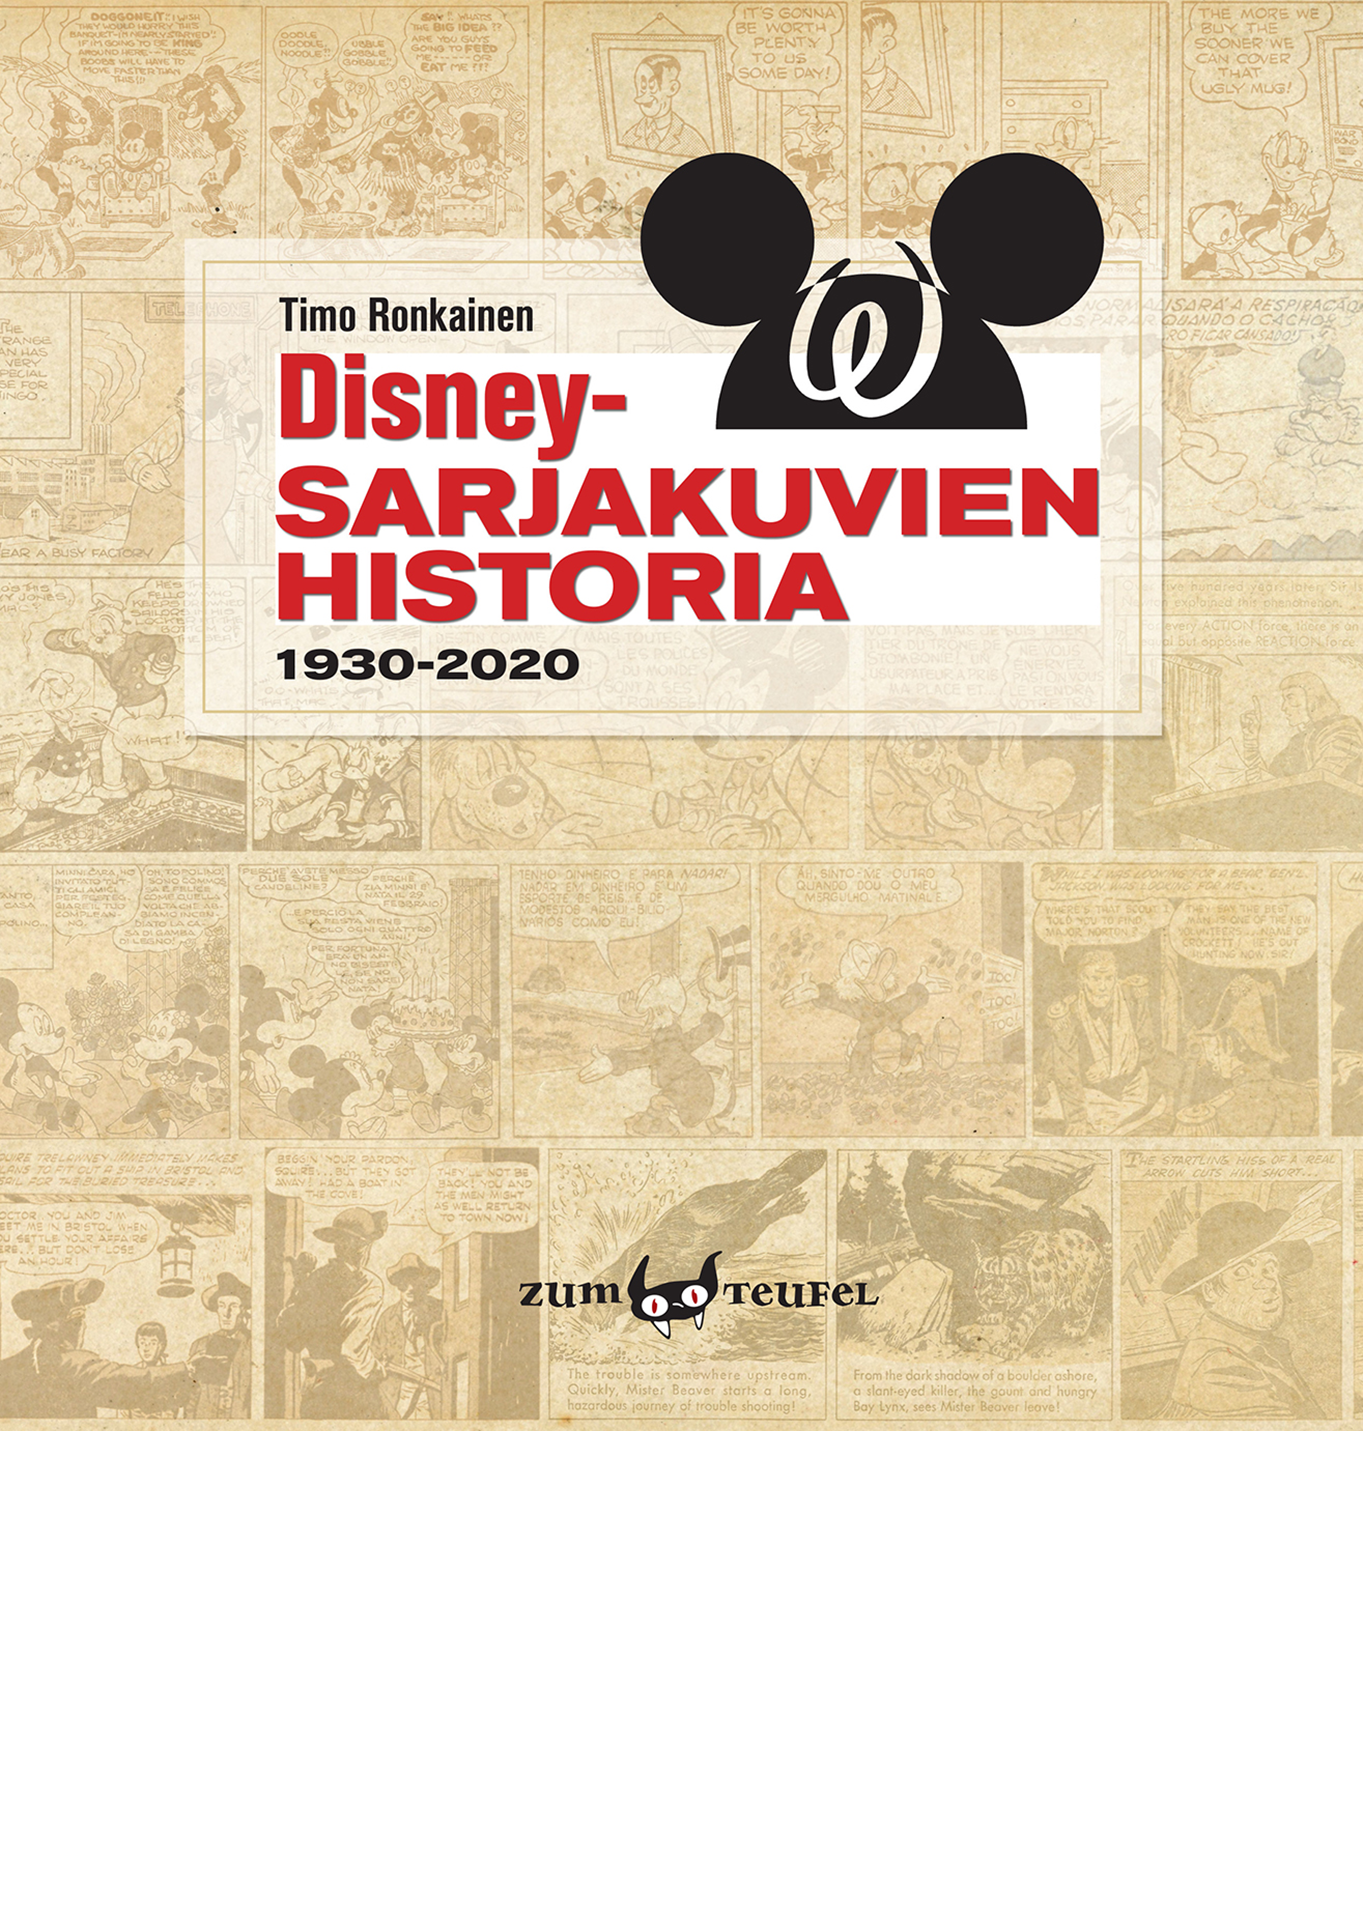 Disney-sarjakuvien historia- kansikuva